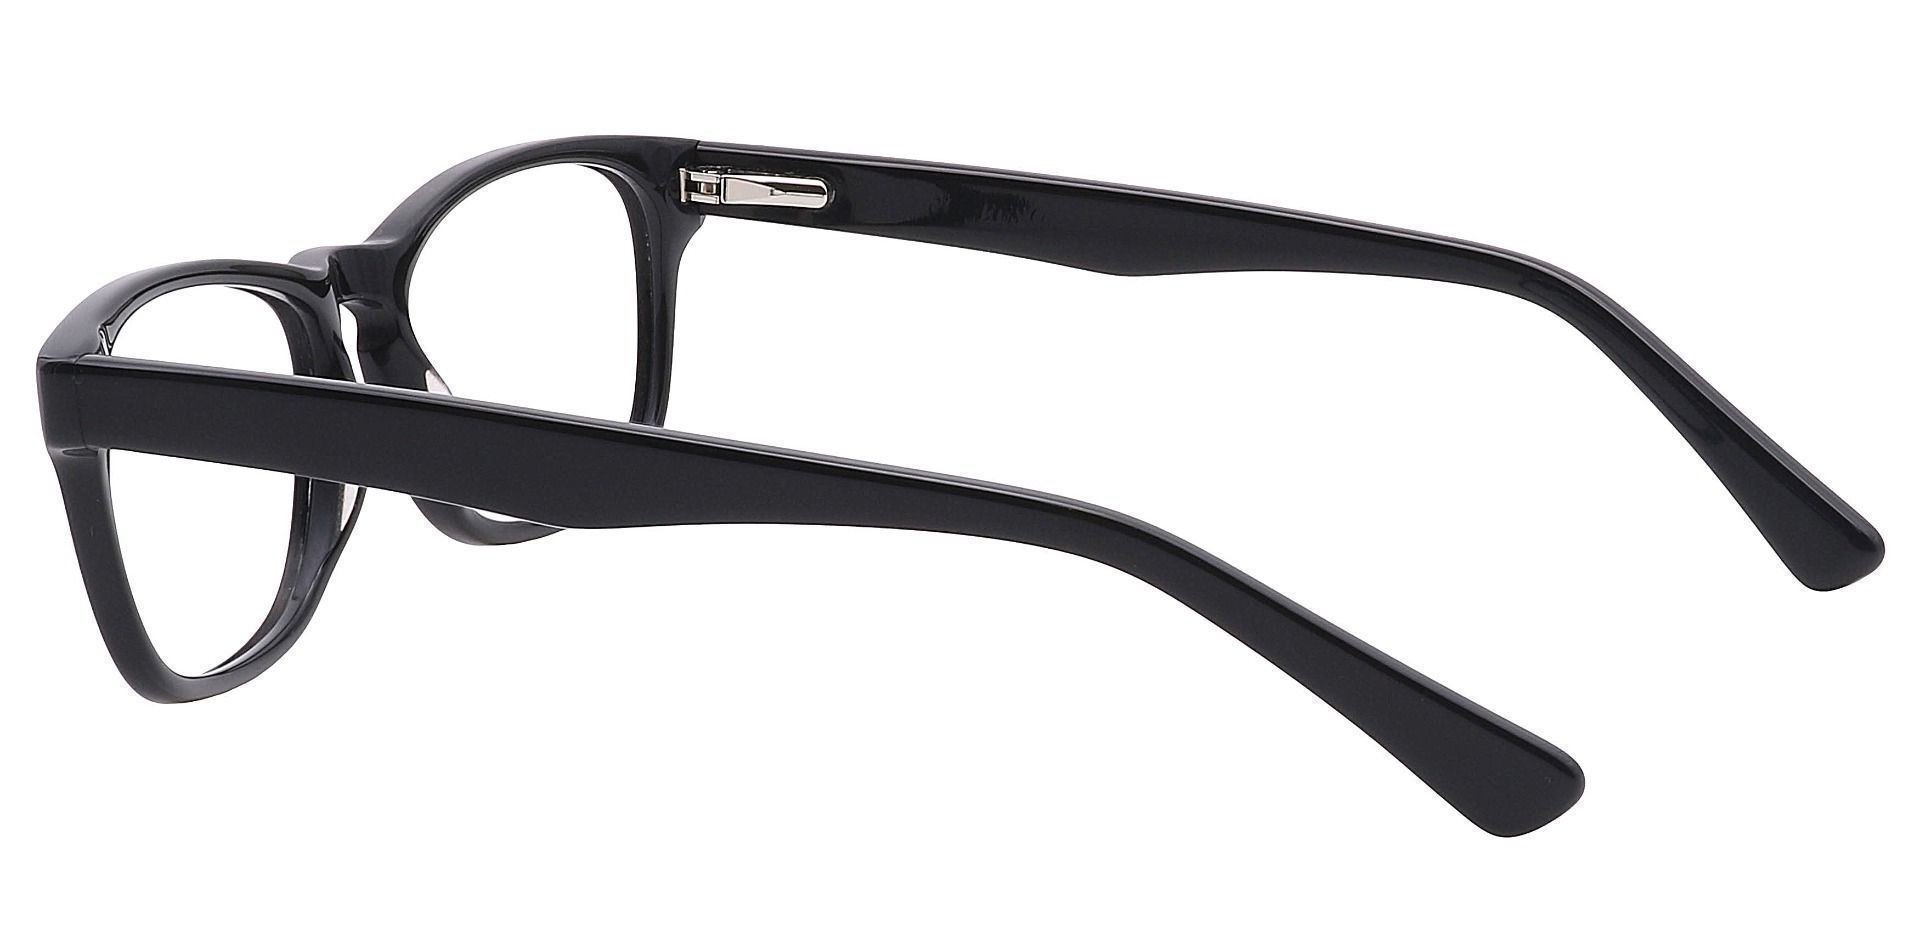 Morris Rectangle Eyeglasses Frame - Black